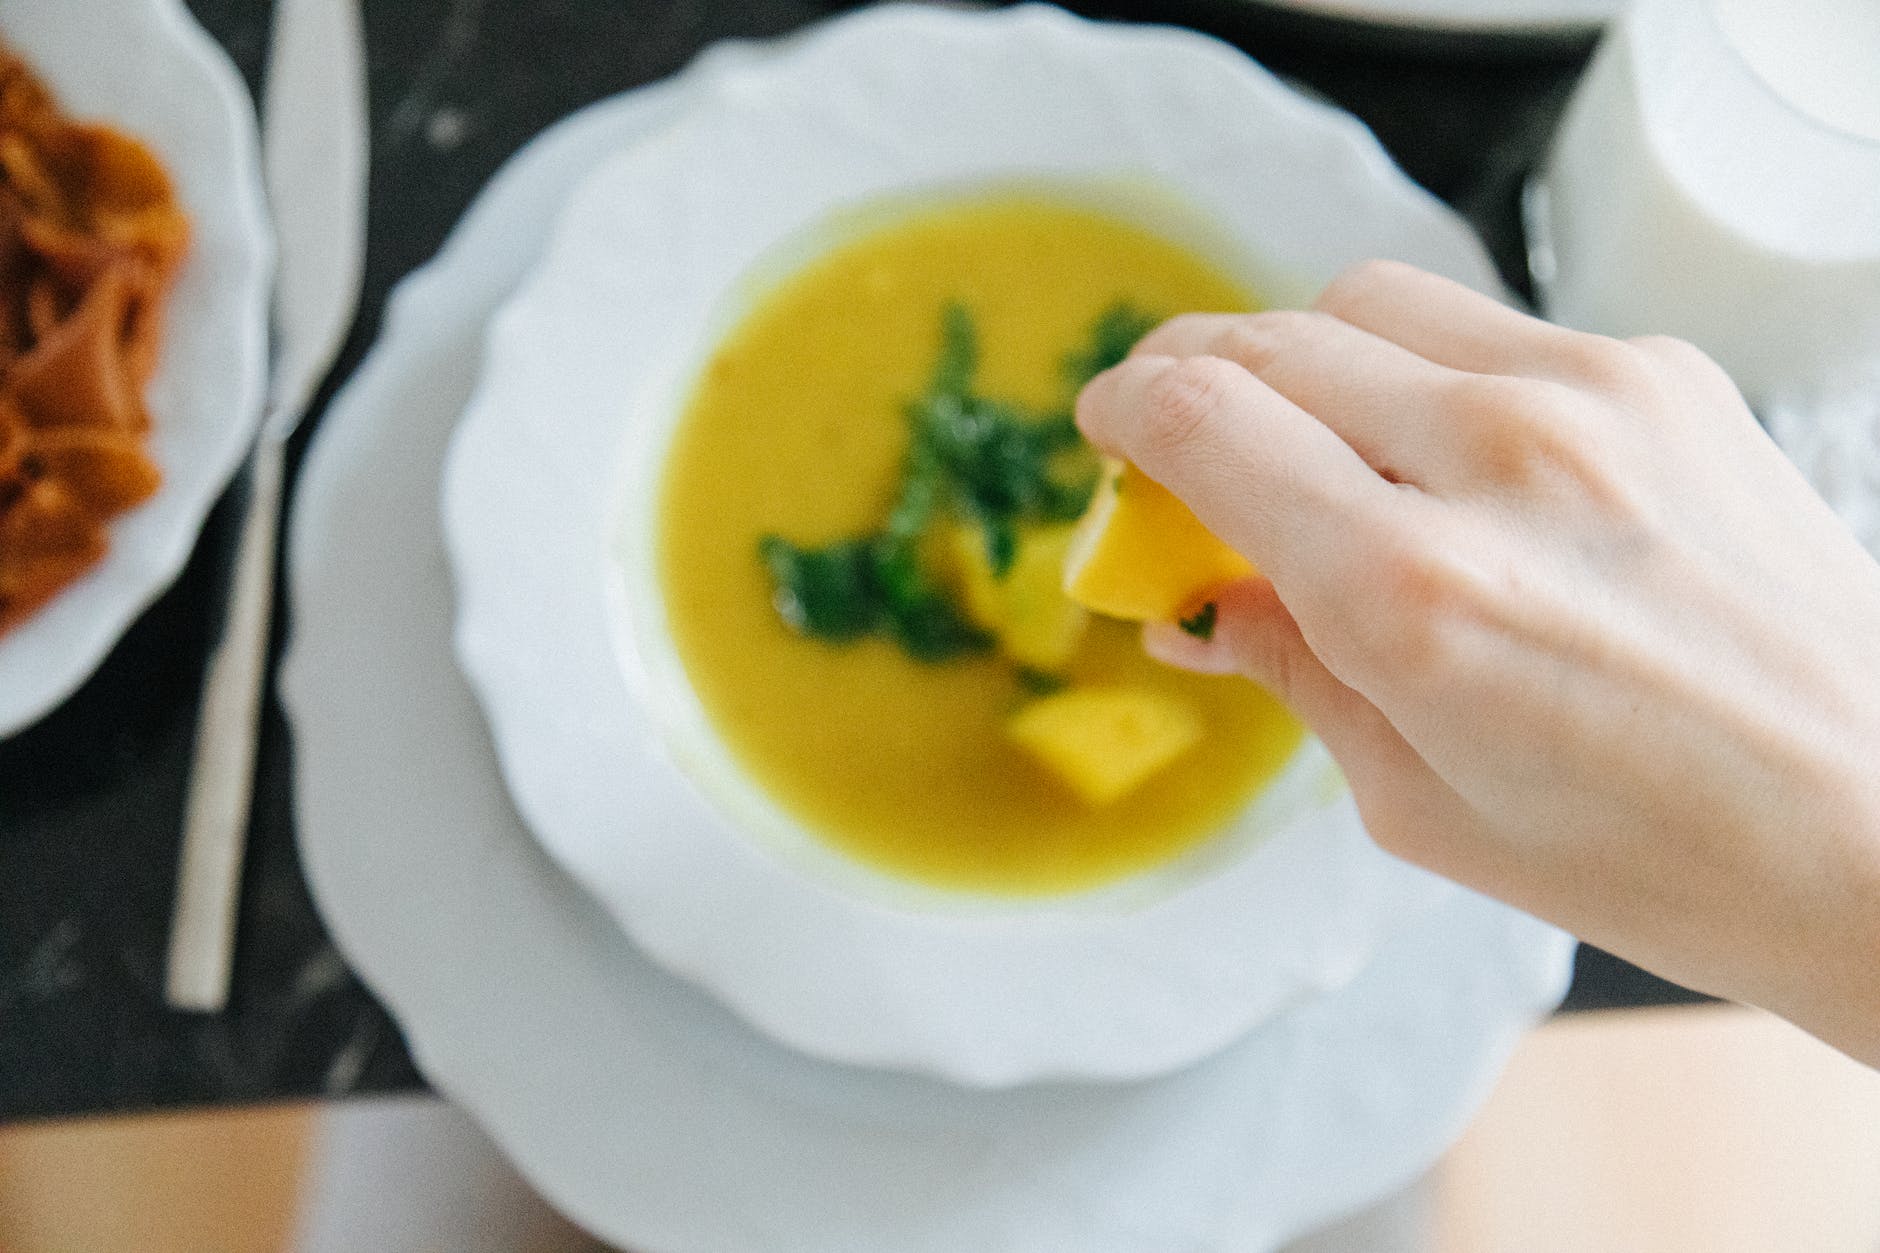 a person squeezing a lemon on lentil soup